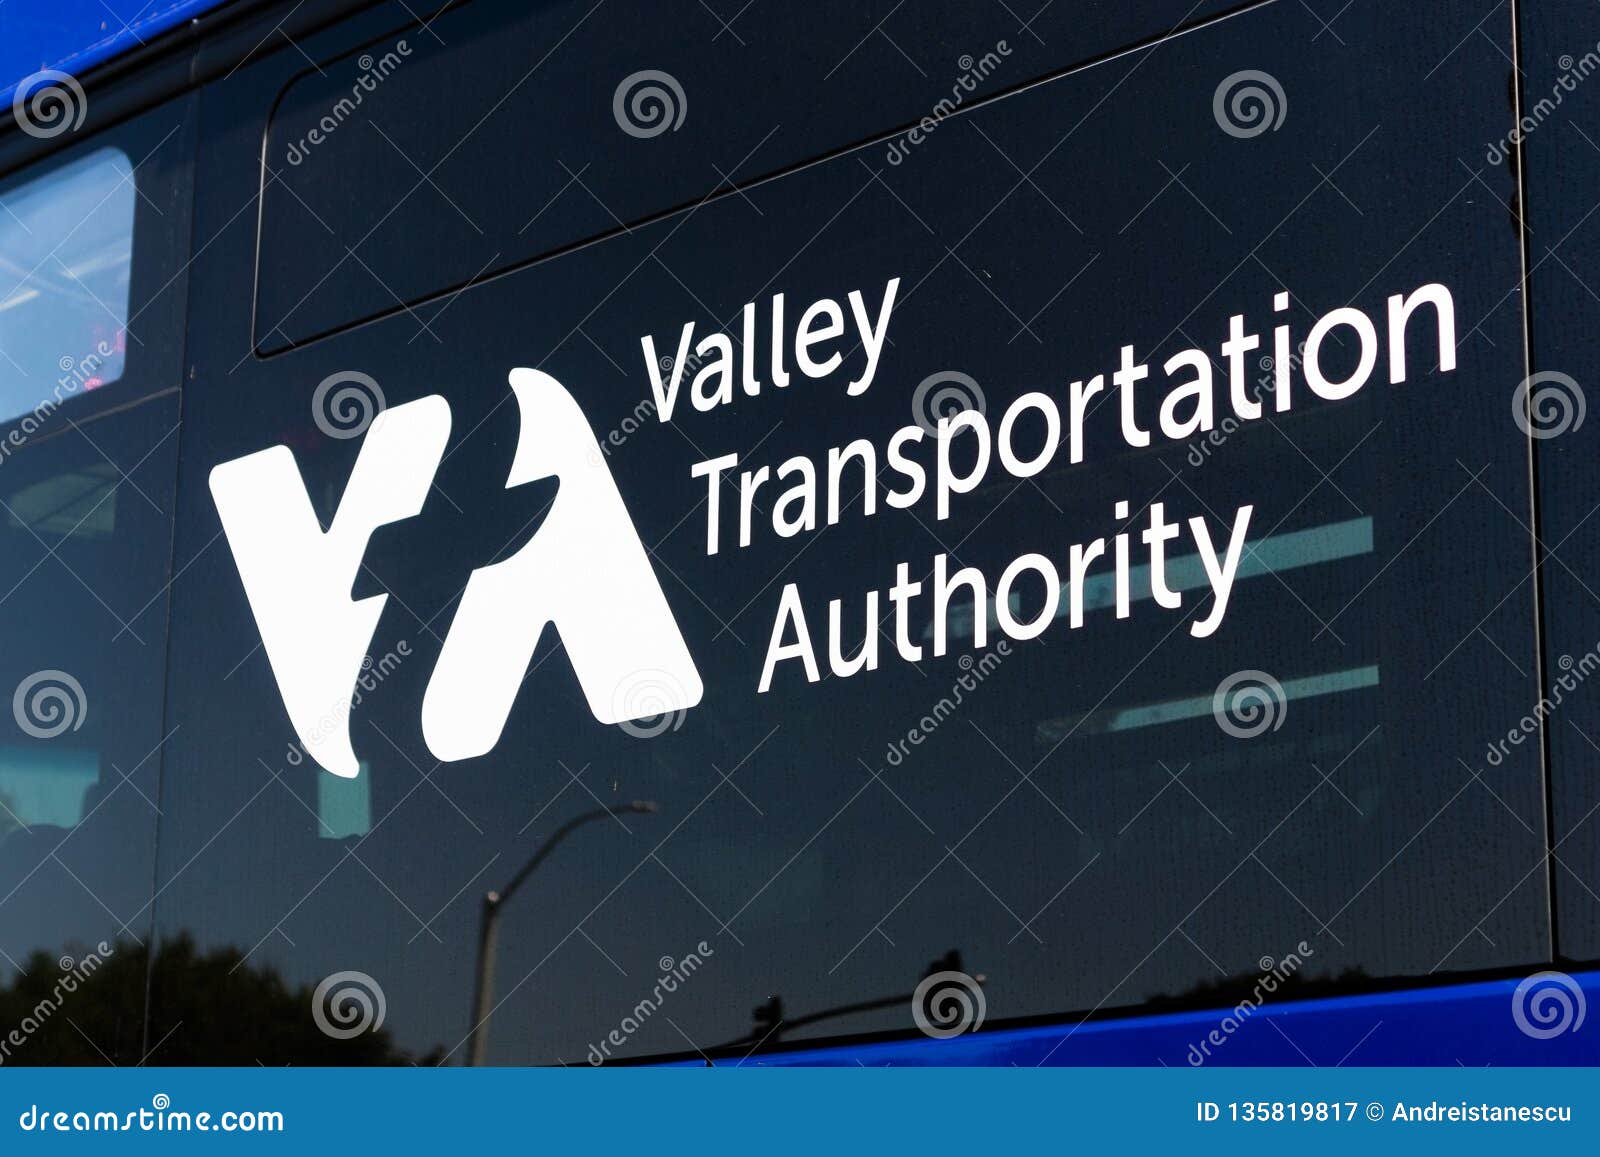 Santa Clara Valley Transportation Authority, California